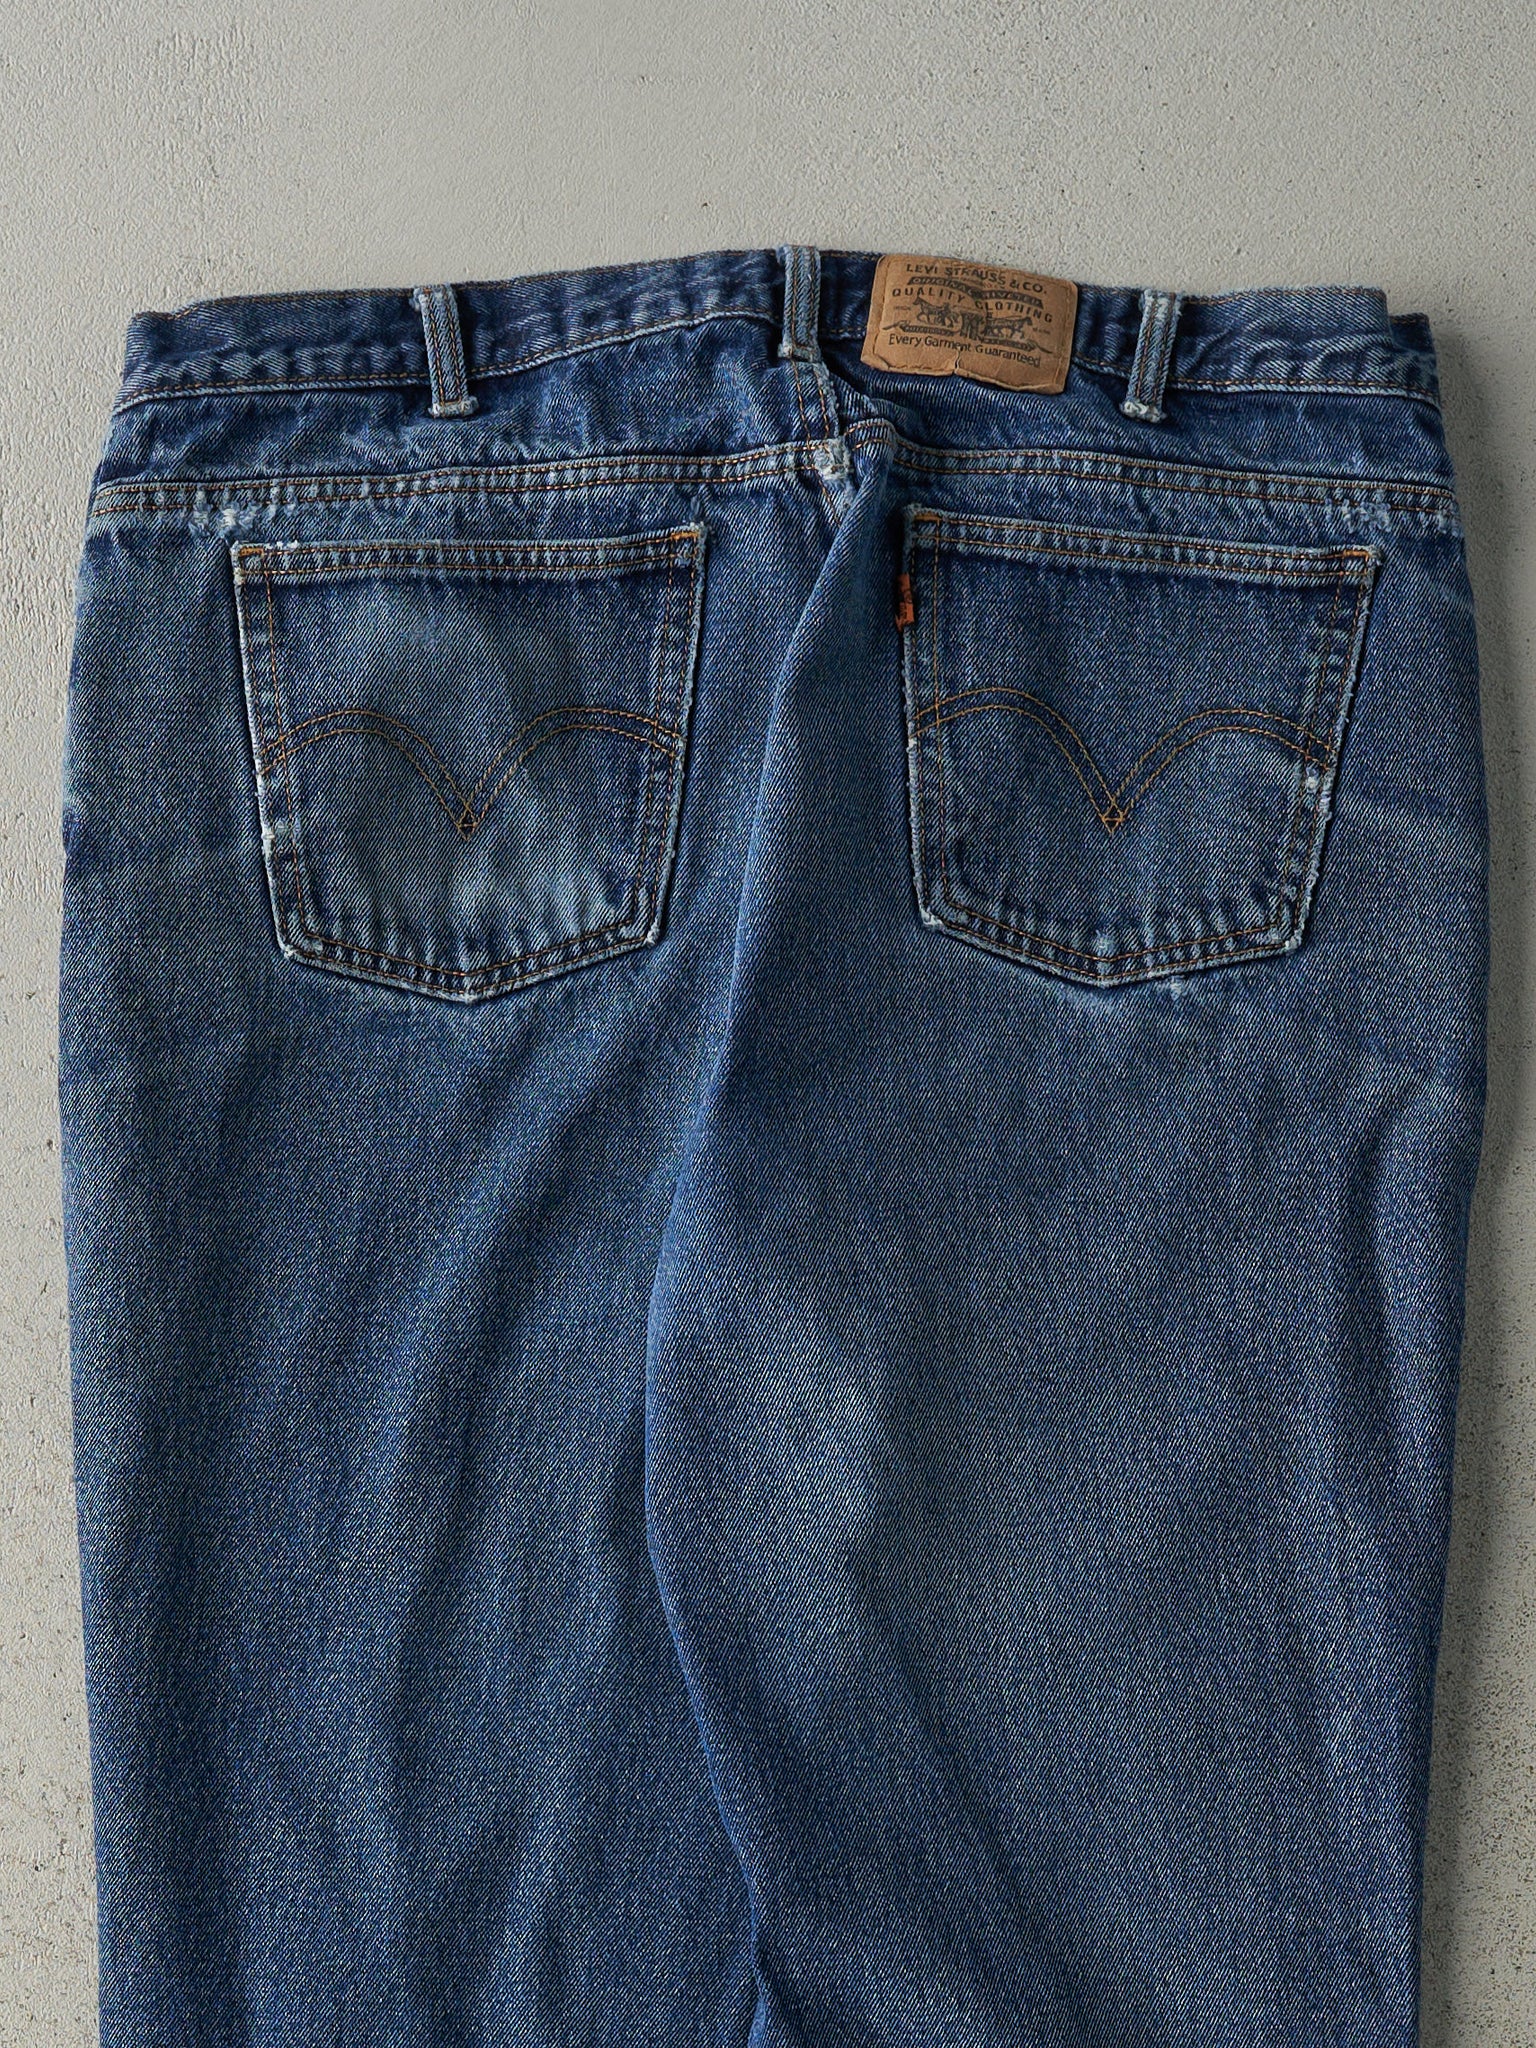 Vintage 90s Mid Wash Levi's Orange Tab Jeans (36x28.5)